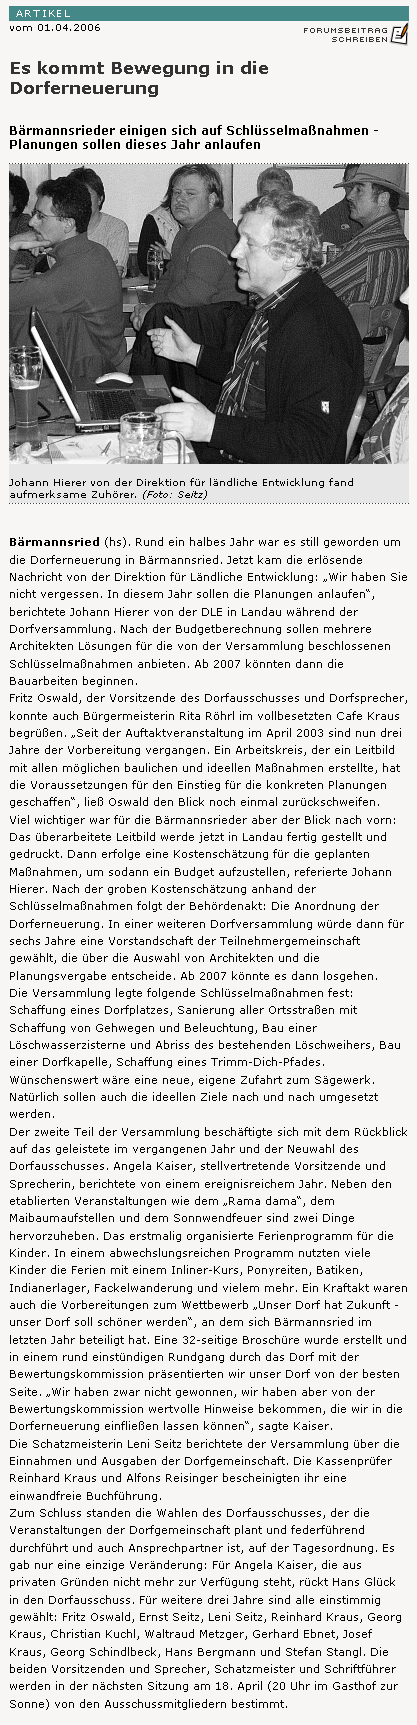 Bericht im Viechtacher-Bayerwald Bote vom 1. April 2006